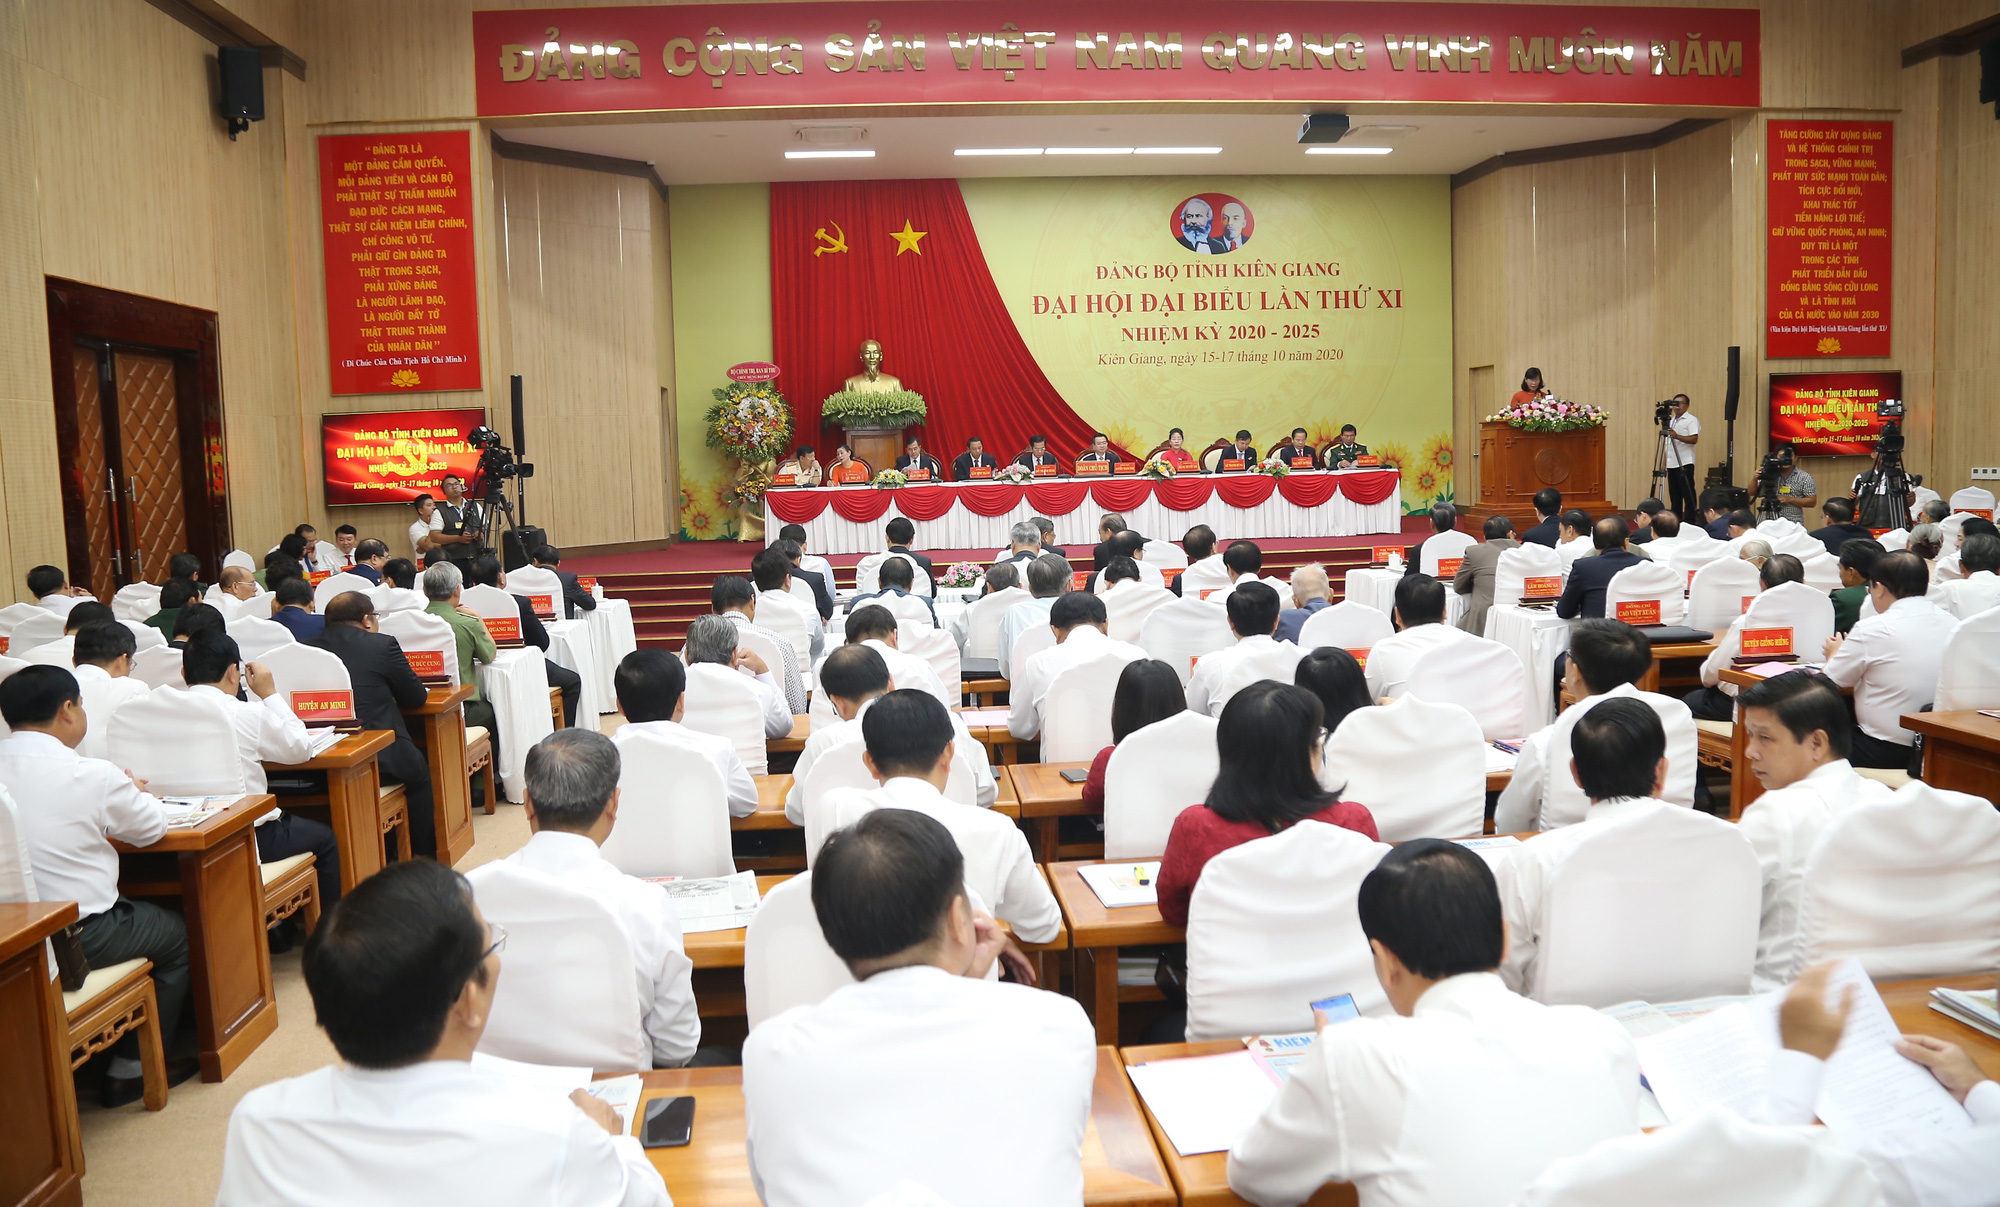 Kiên Giang: Khai mạc Đại hội đại biểu Đảng bộ tỉnh Kiên Giang lần thứ XI - Ảnh 4.